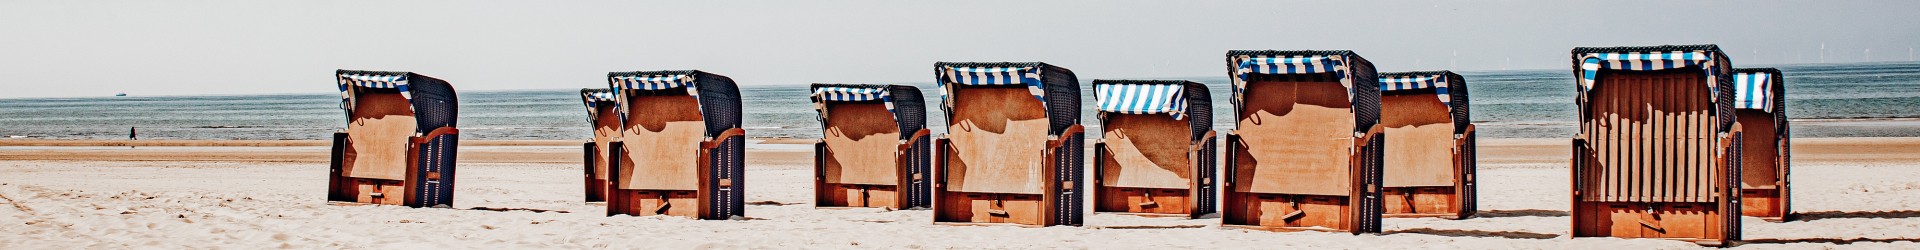 strandstoelen.jpg